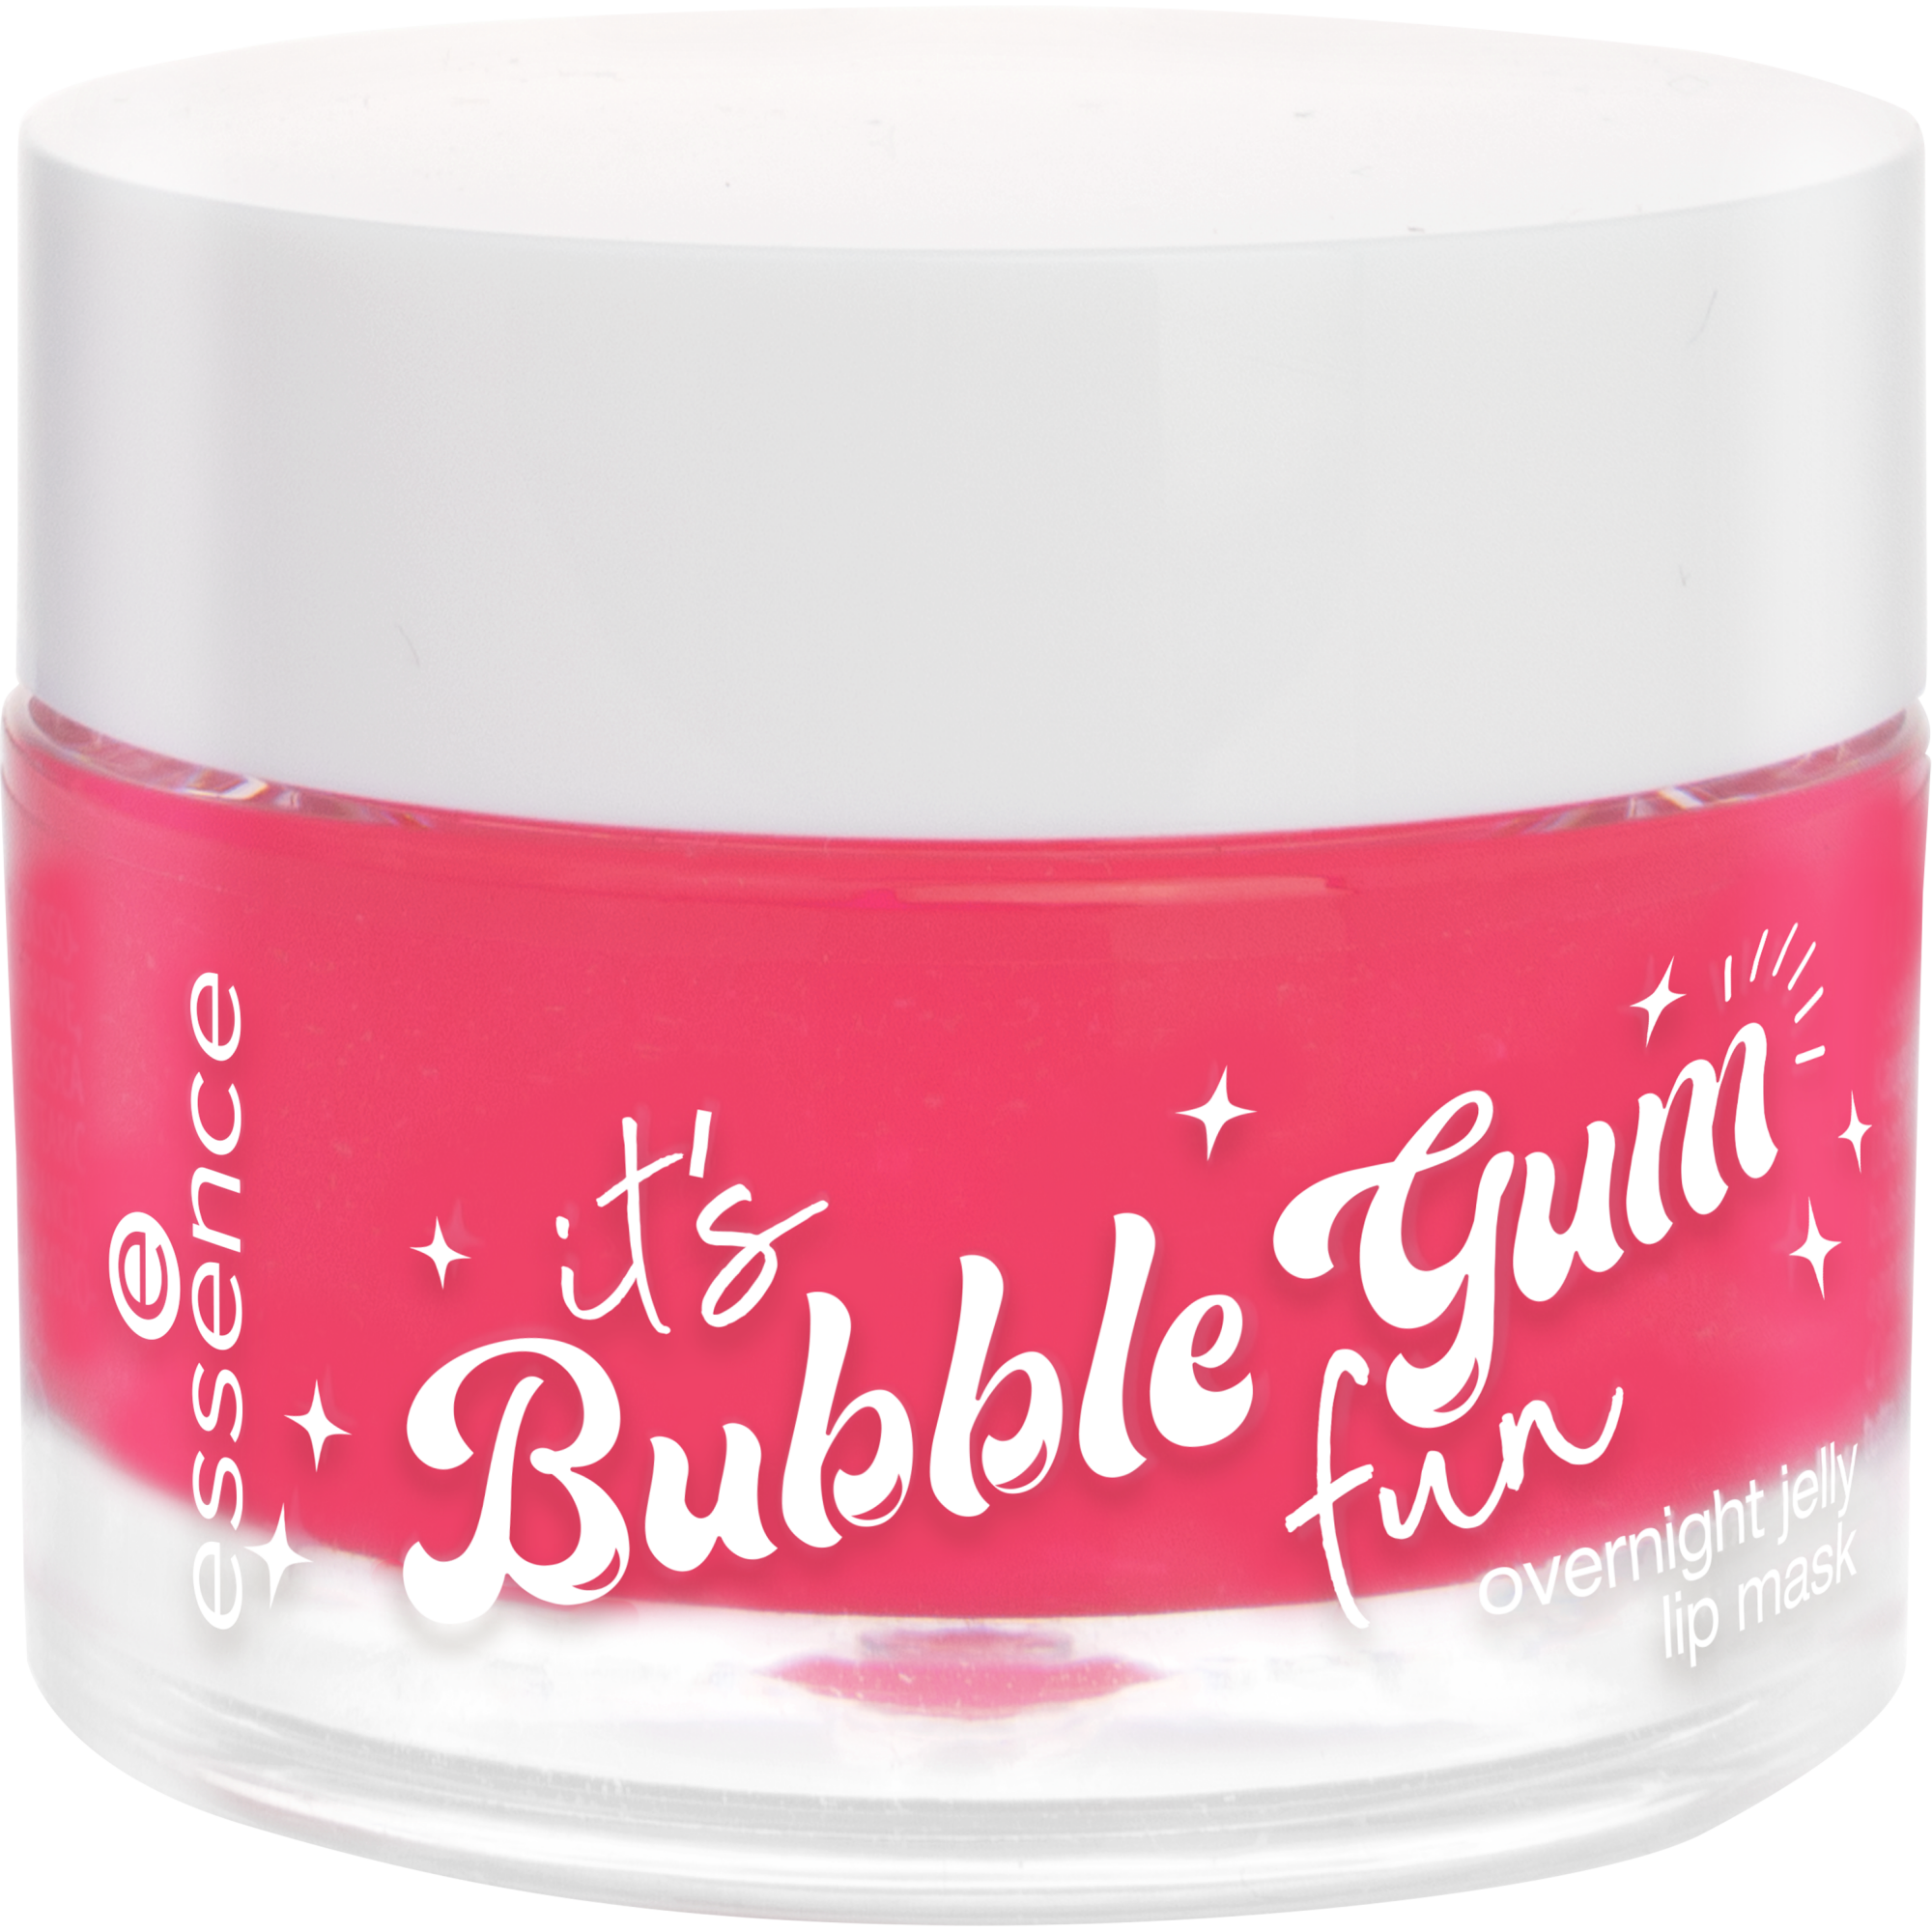 it's Bubble Gum fun нощна желе маска за устни